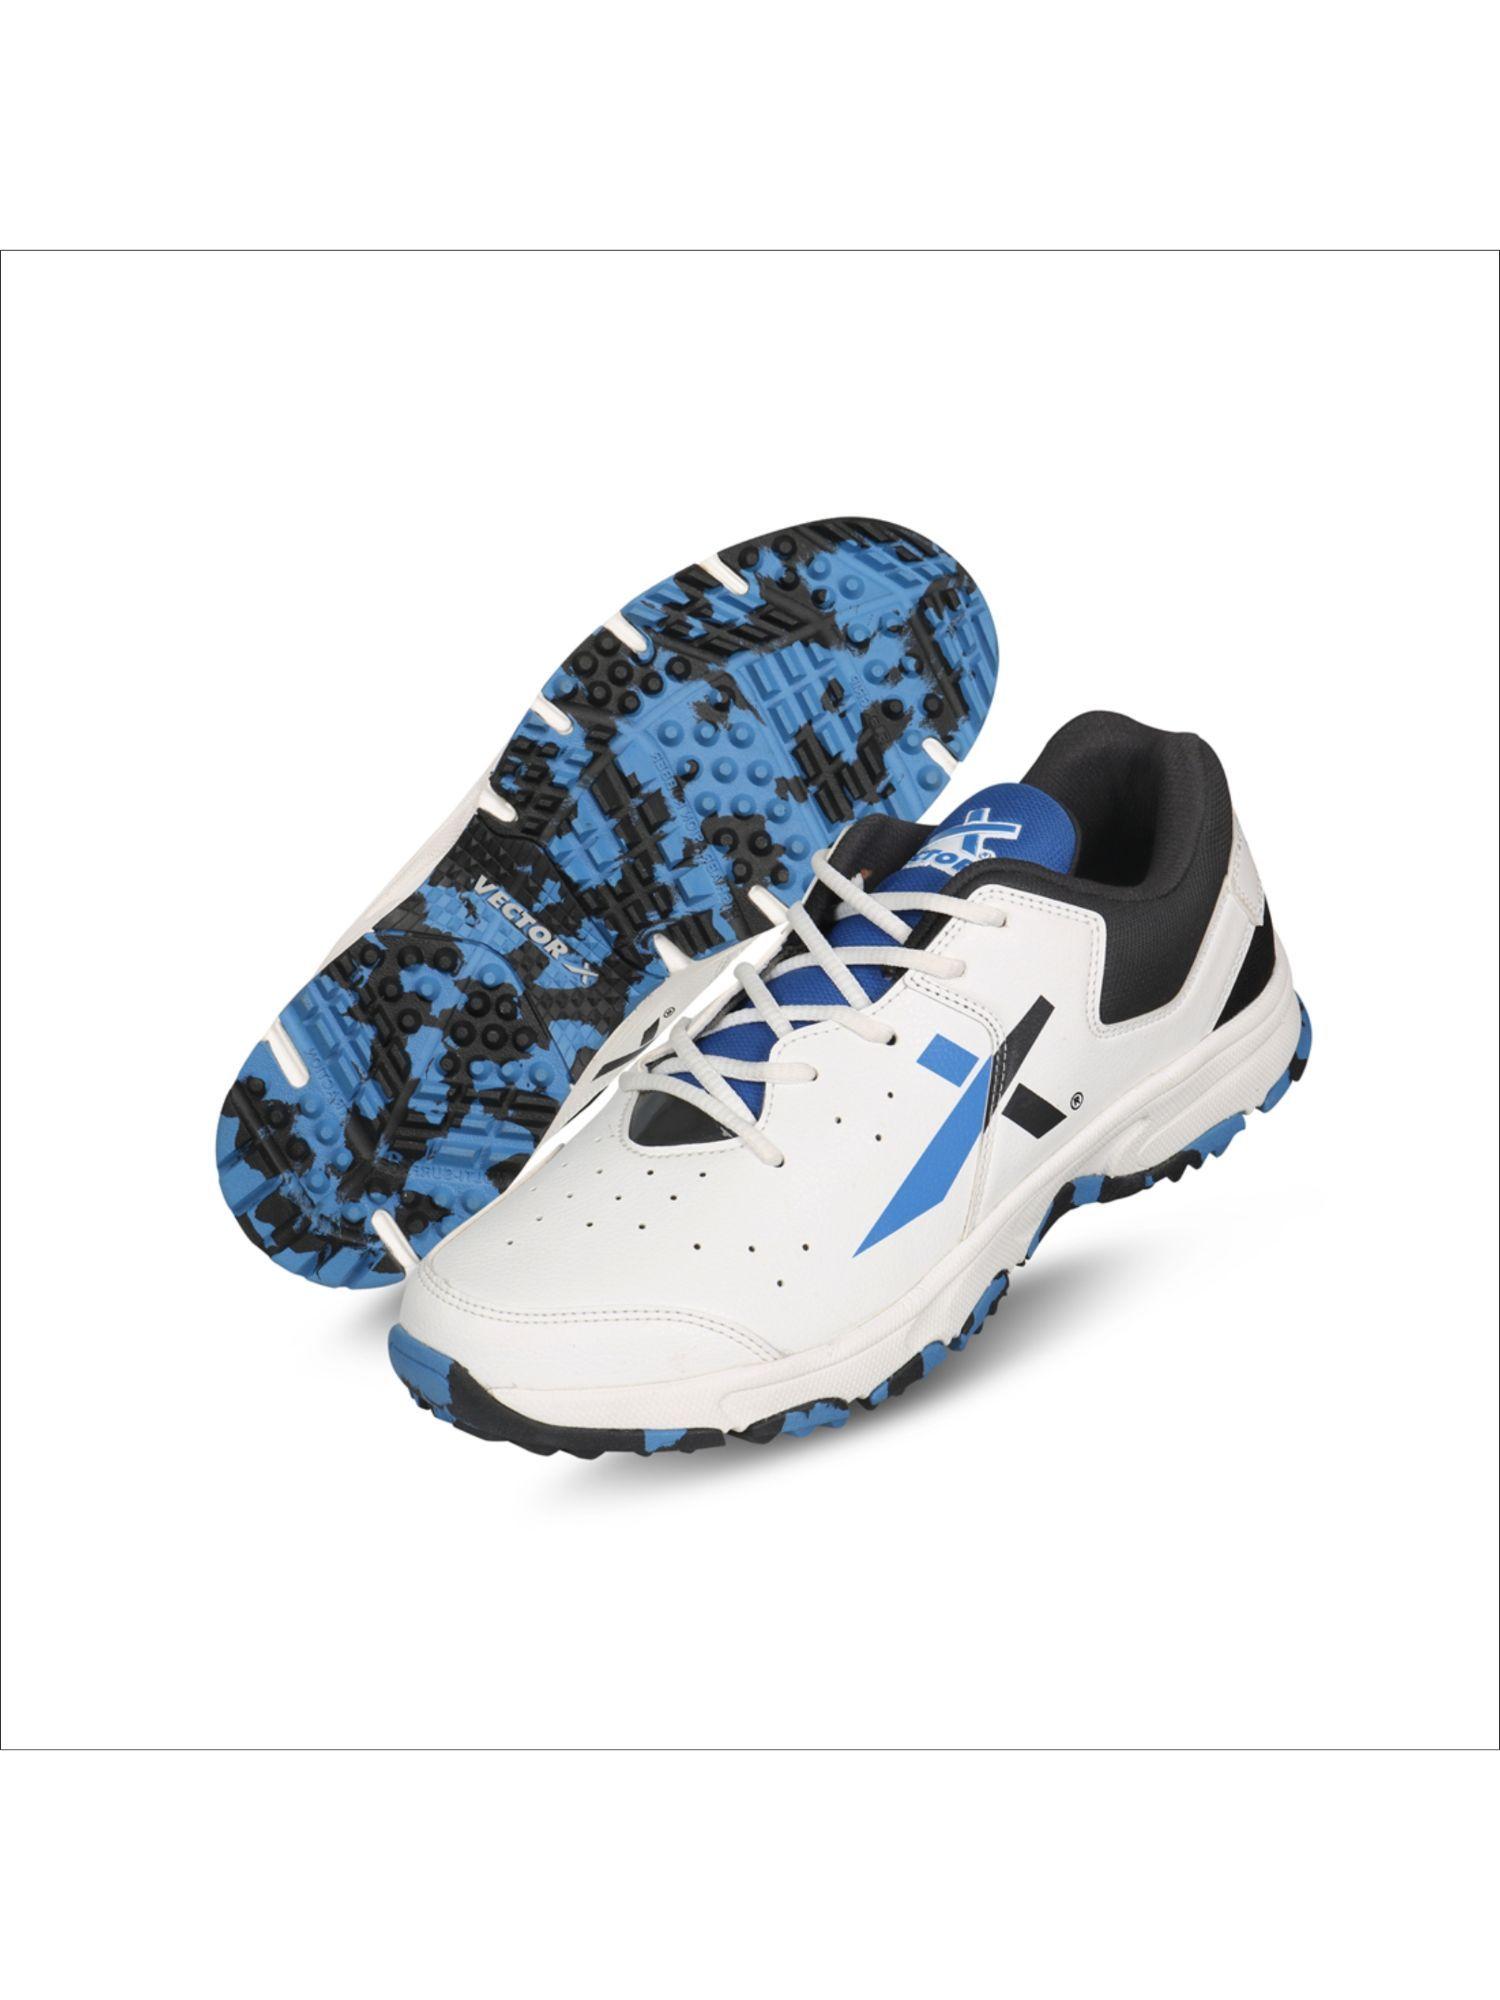 ckt-500 cricket shoes for men (white-black-blue)